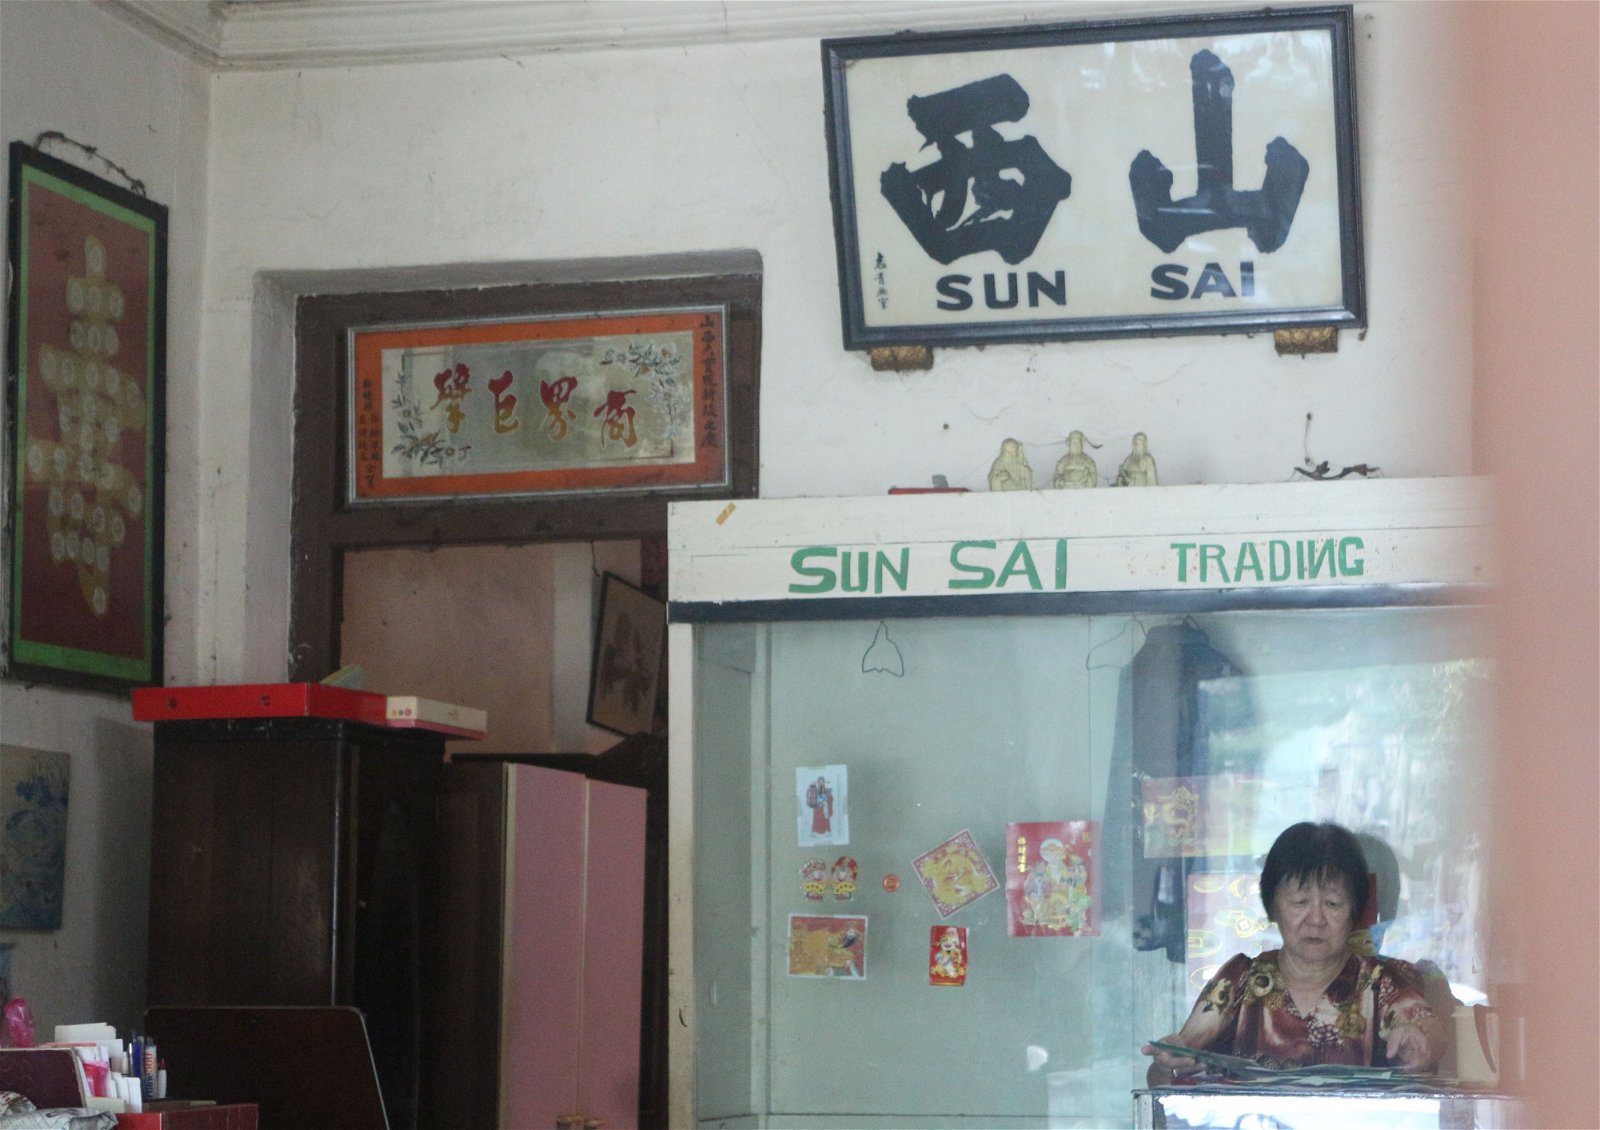 山西贸易是峇株巴辖硕果仅存仍以手工制作挽轴的老店。